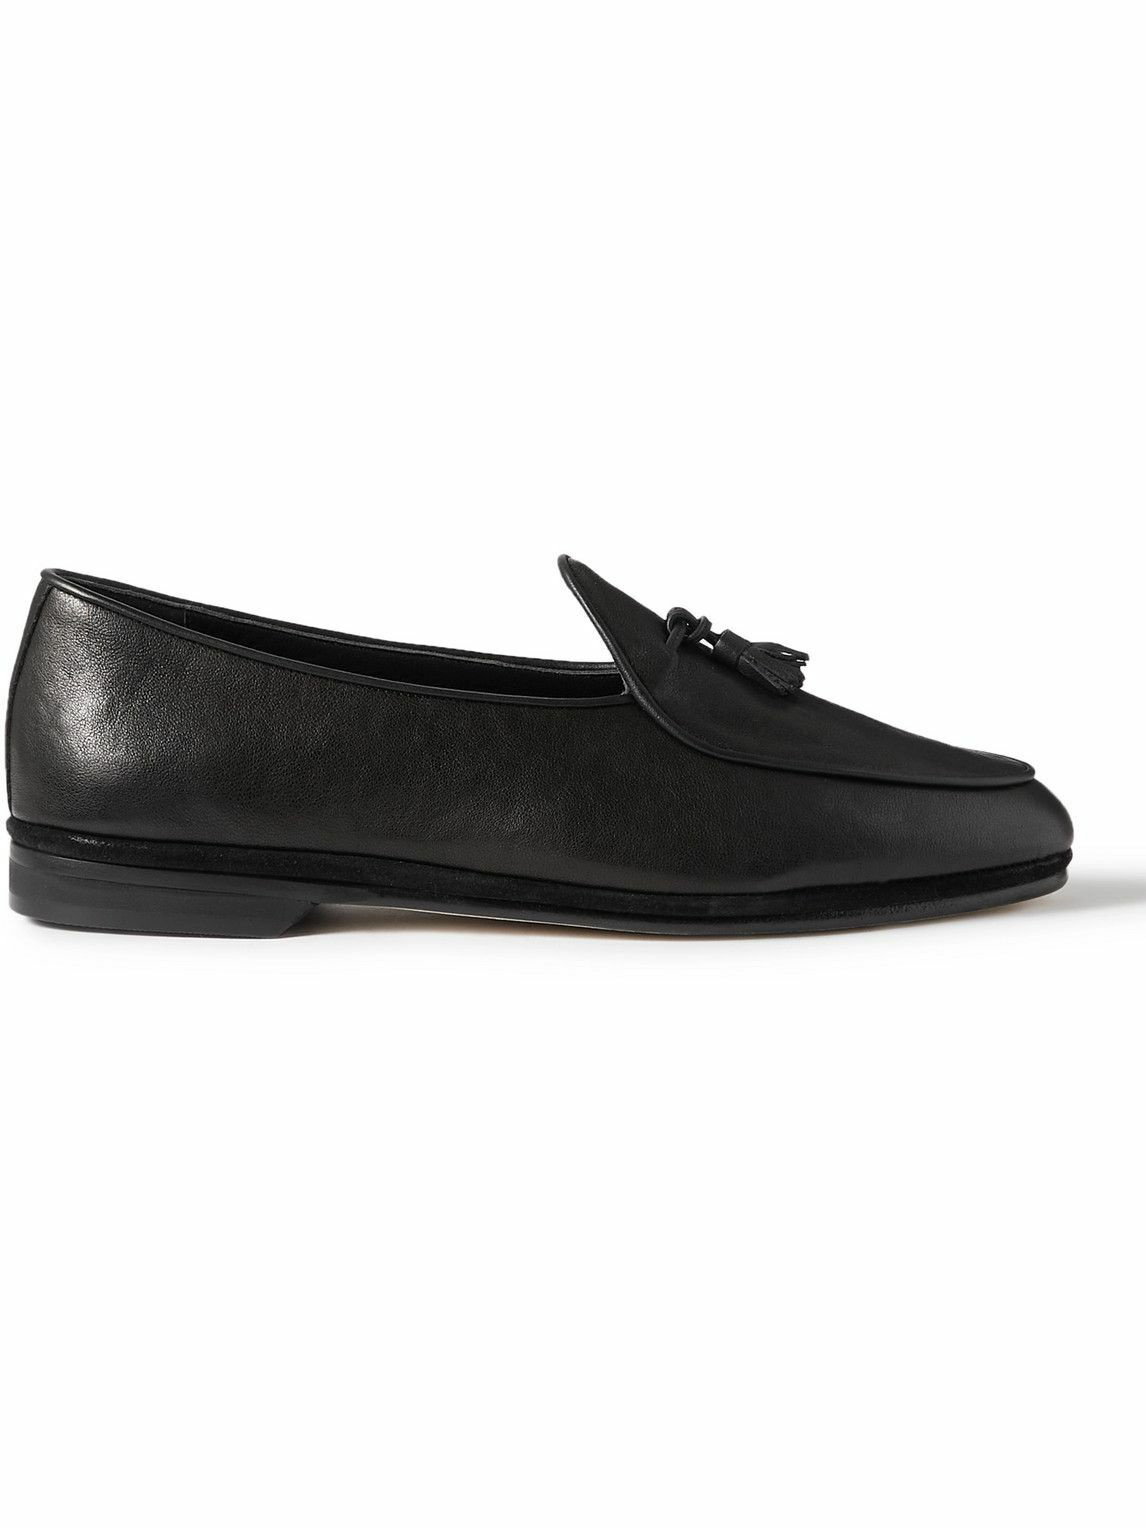 Rubinacci - Marphy Tasselled Leather Loafers - Black Rubinacci